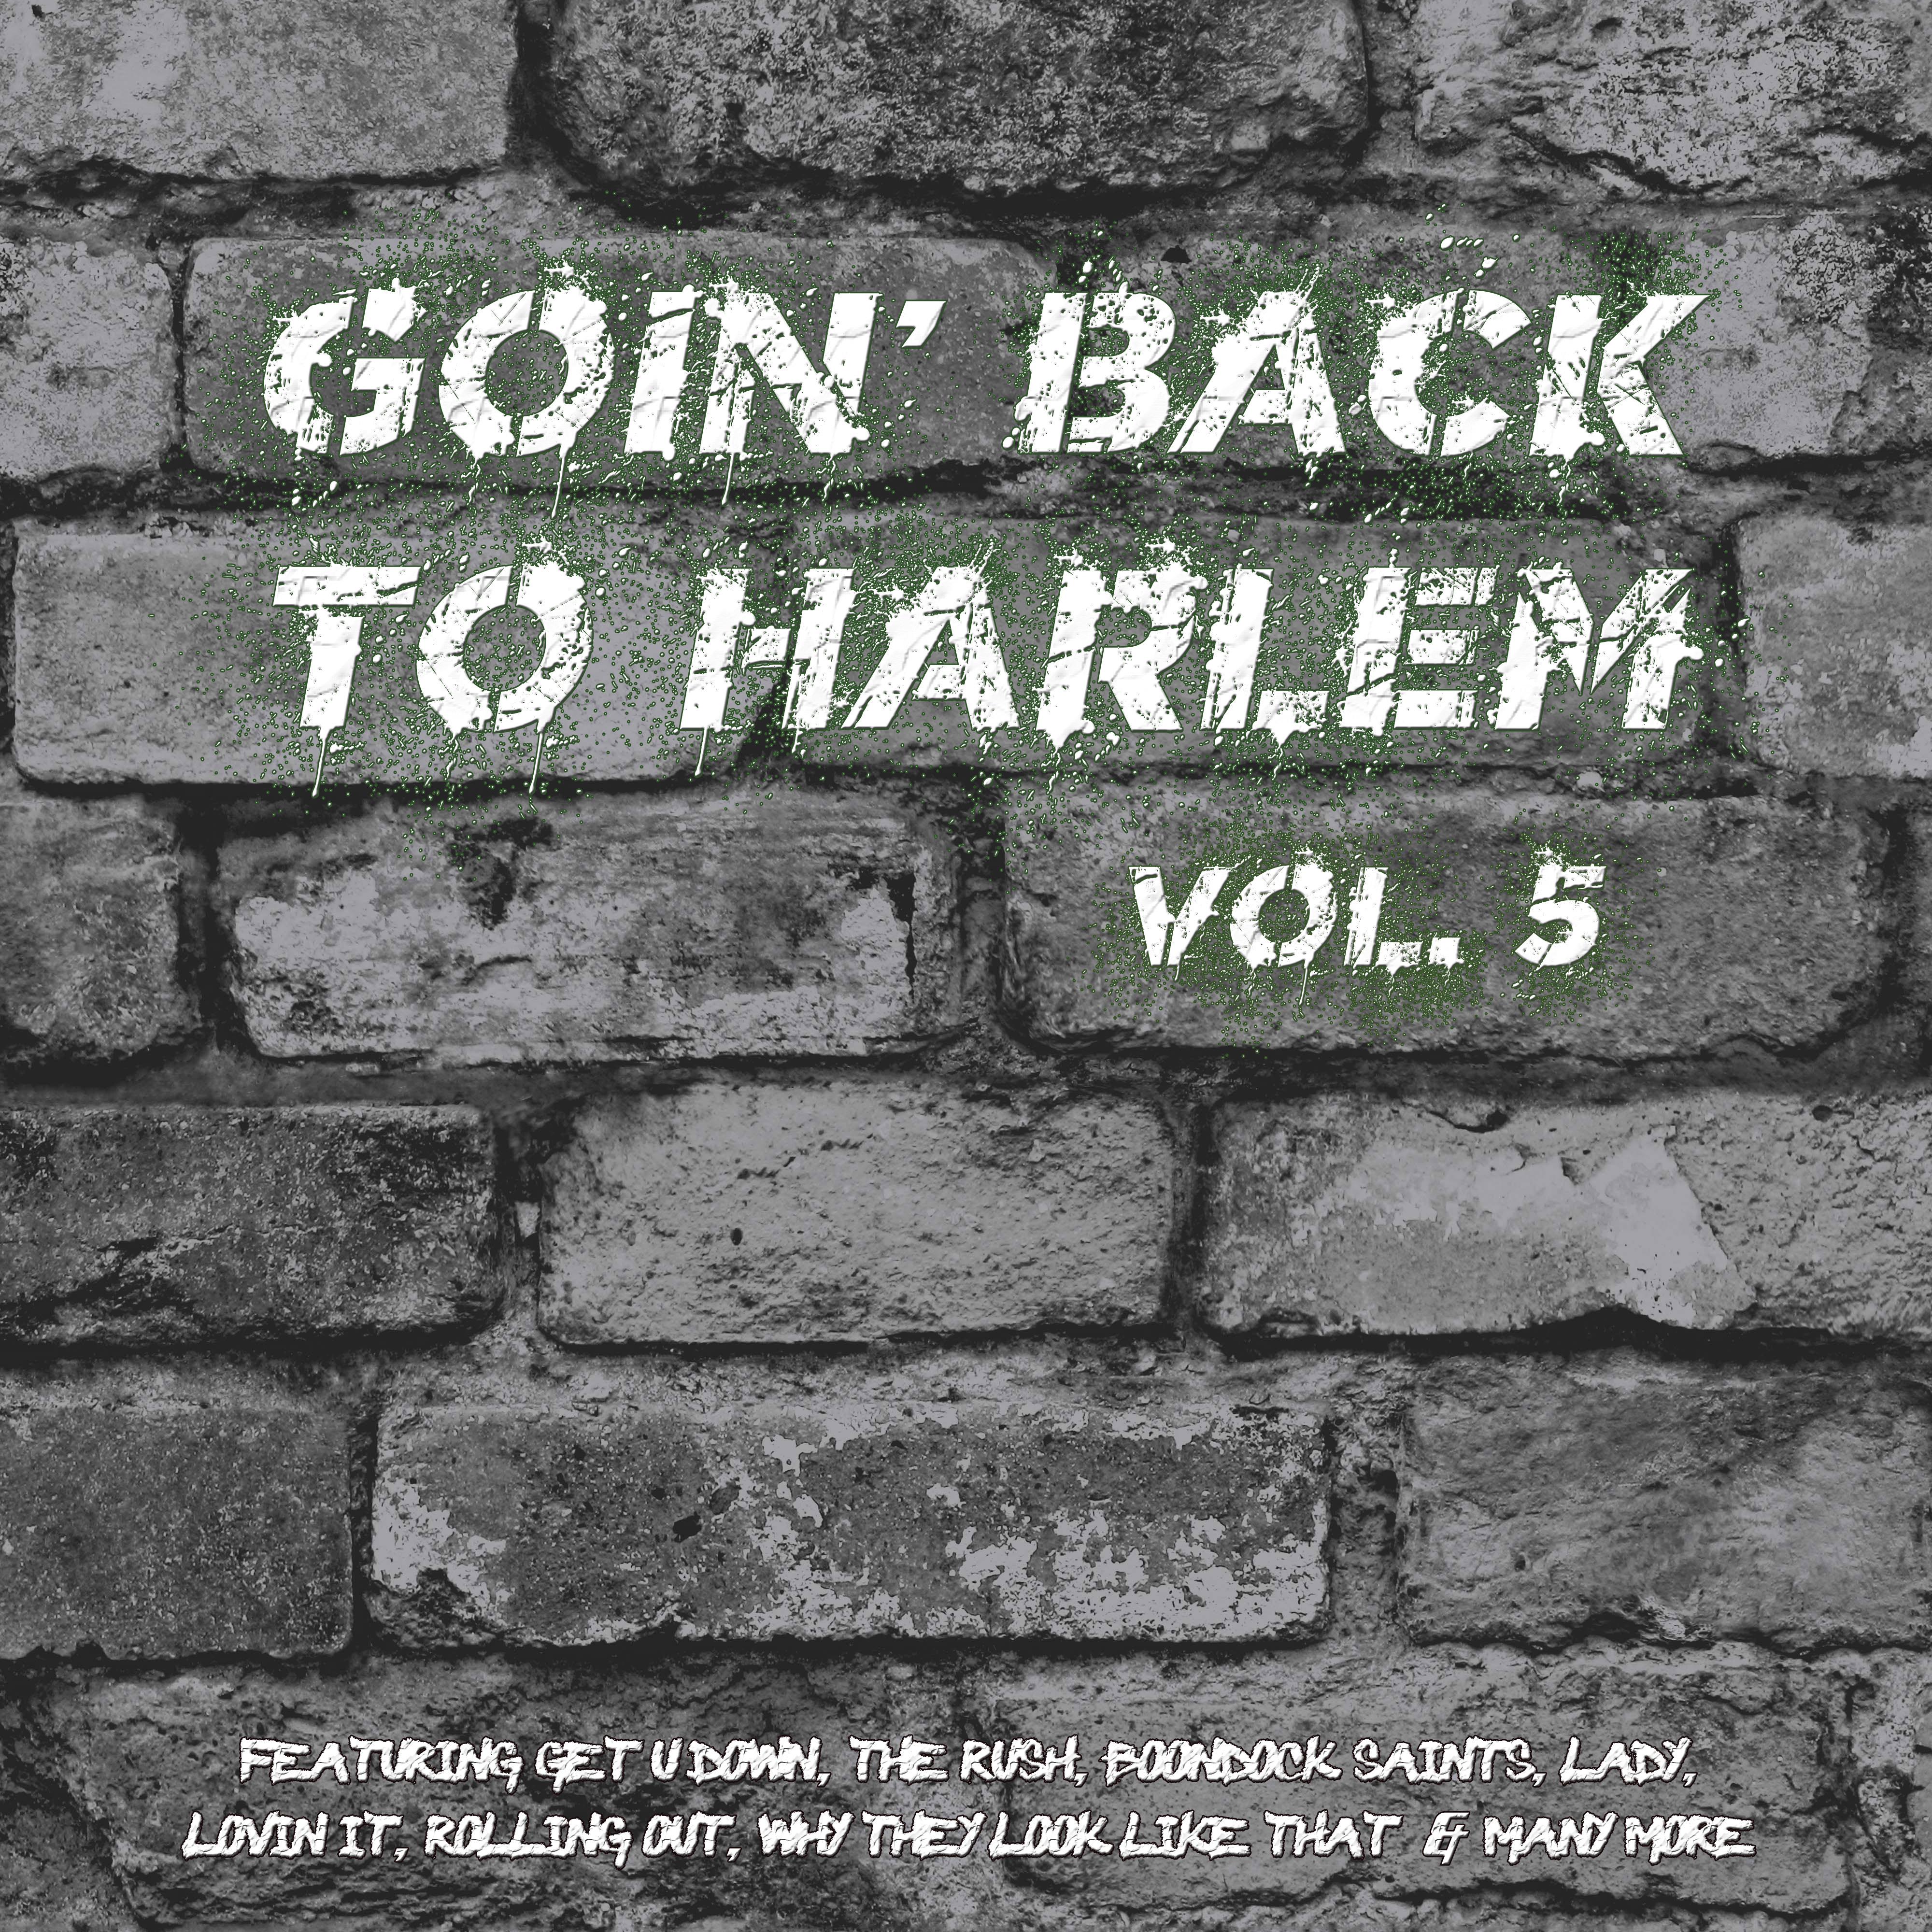 Goin' Back to Harlem Vol. 5